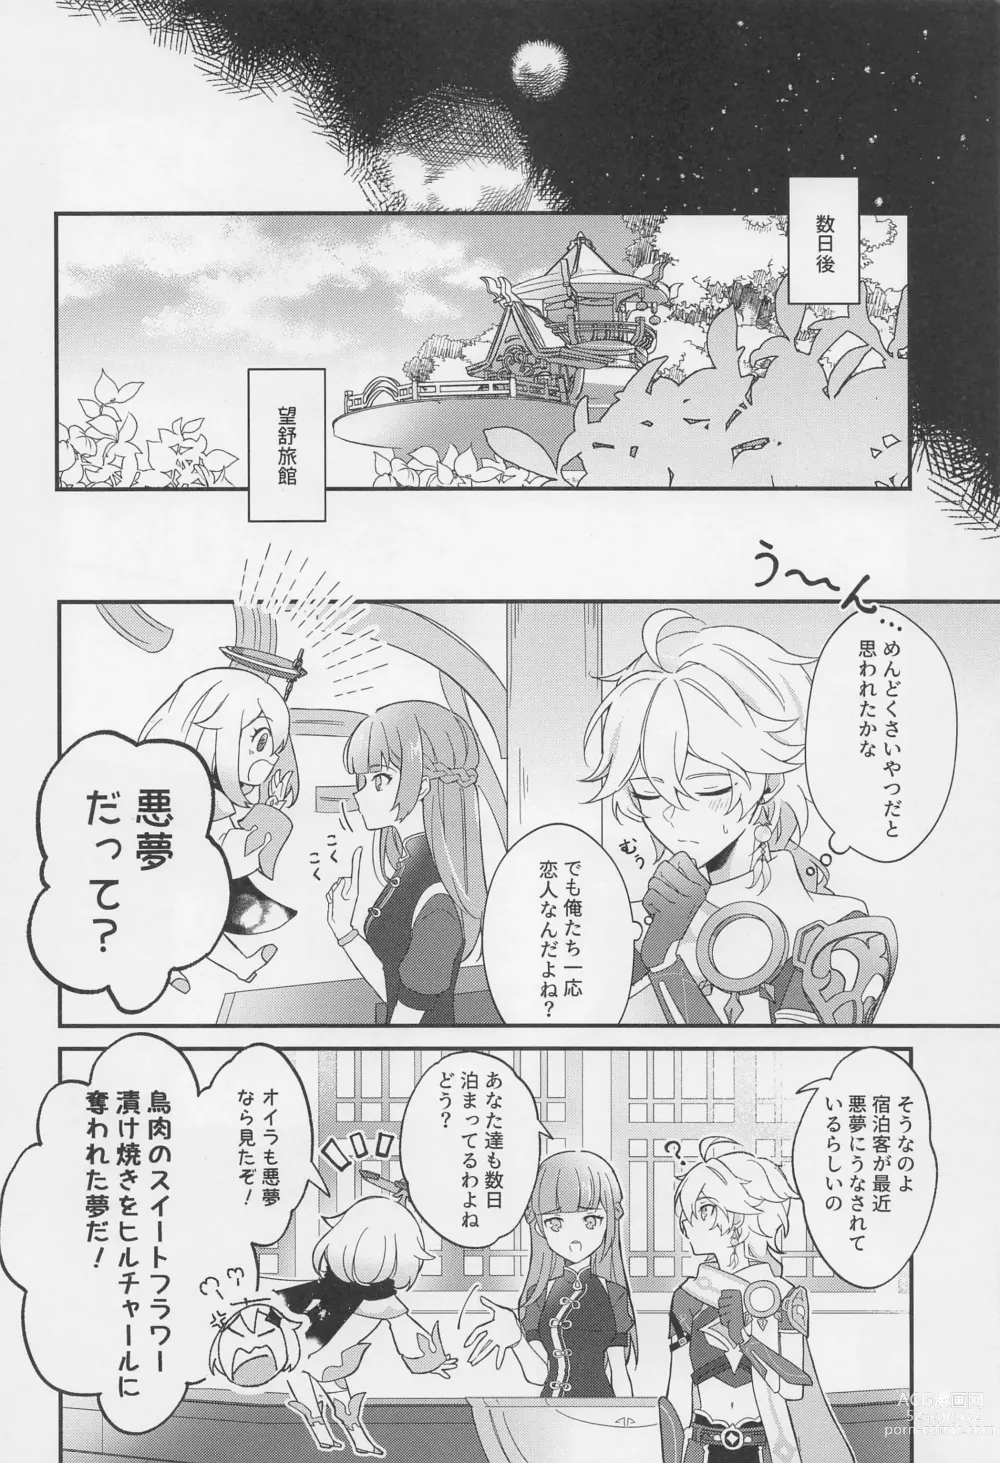 Page 7 of doujinshi Kimi o Wazurau